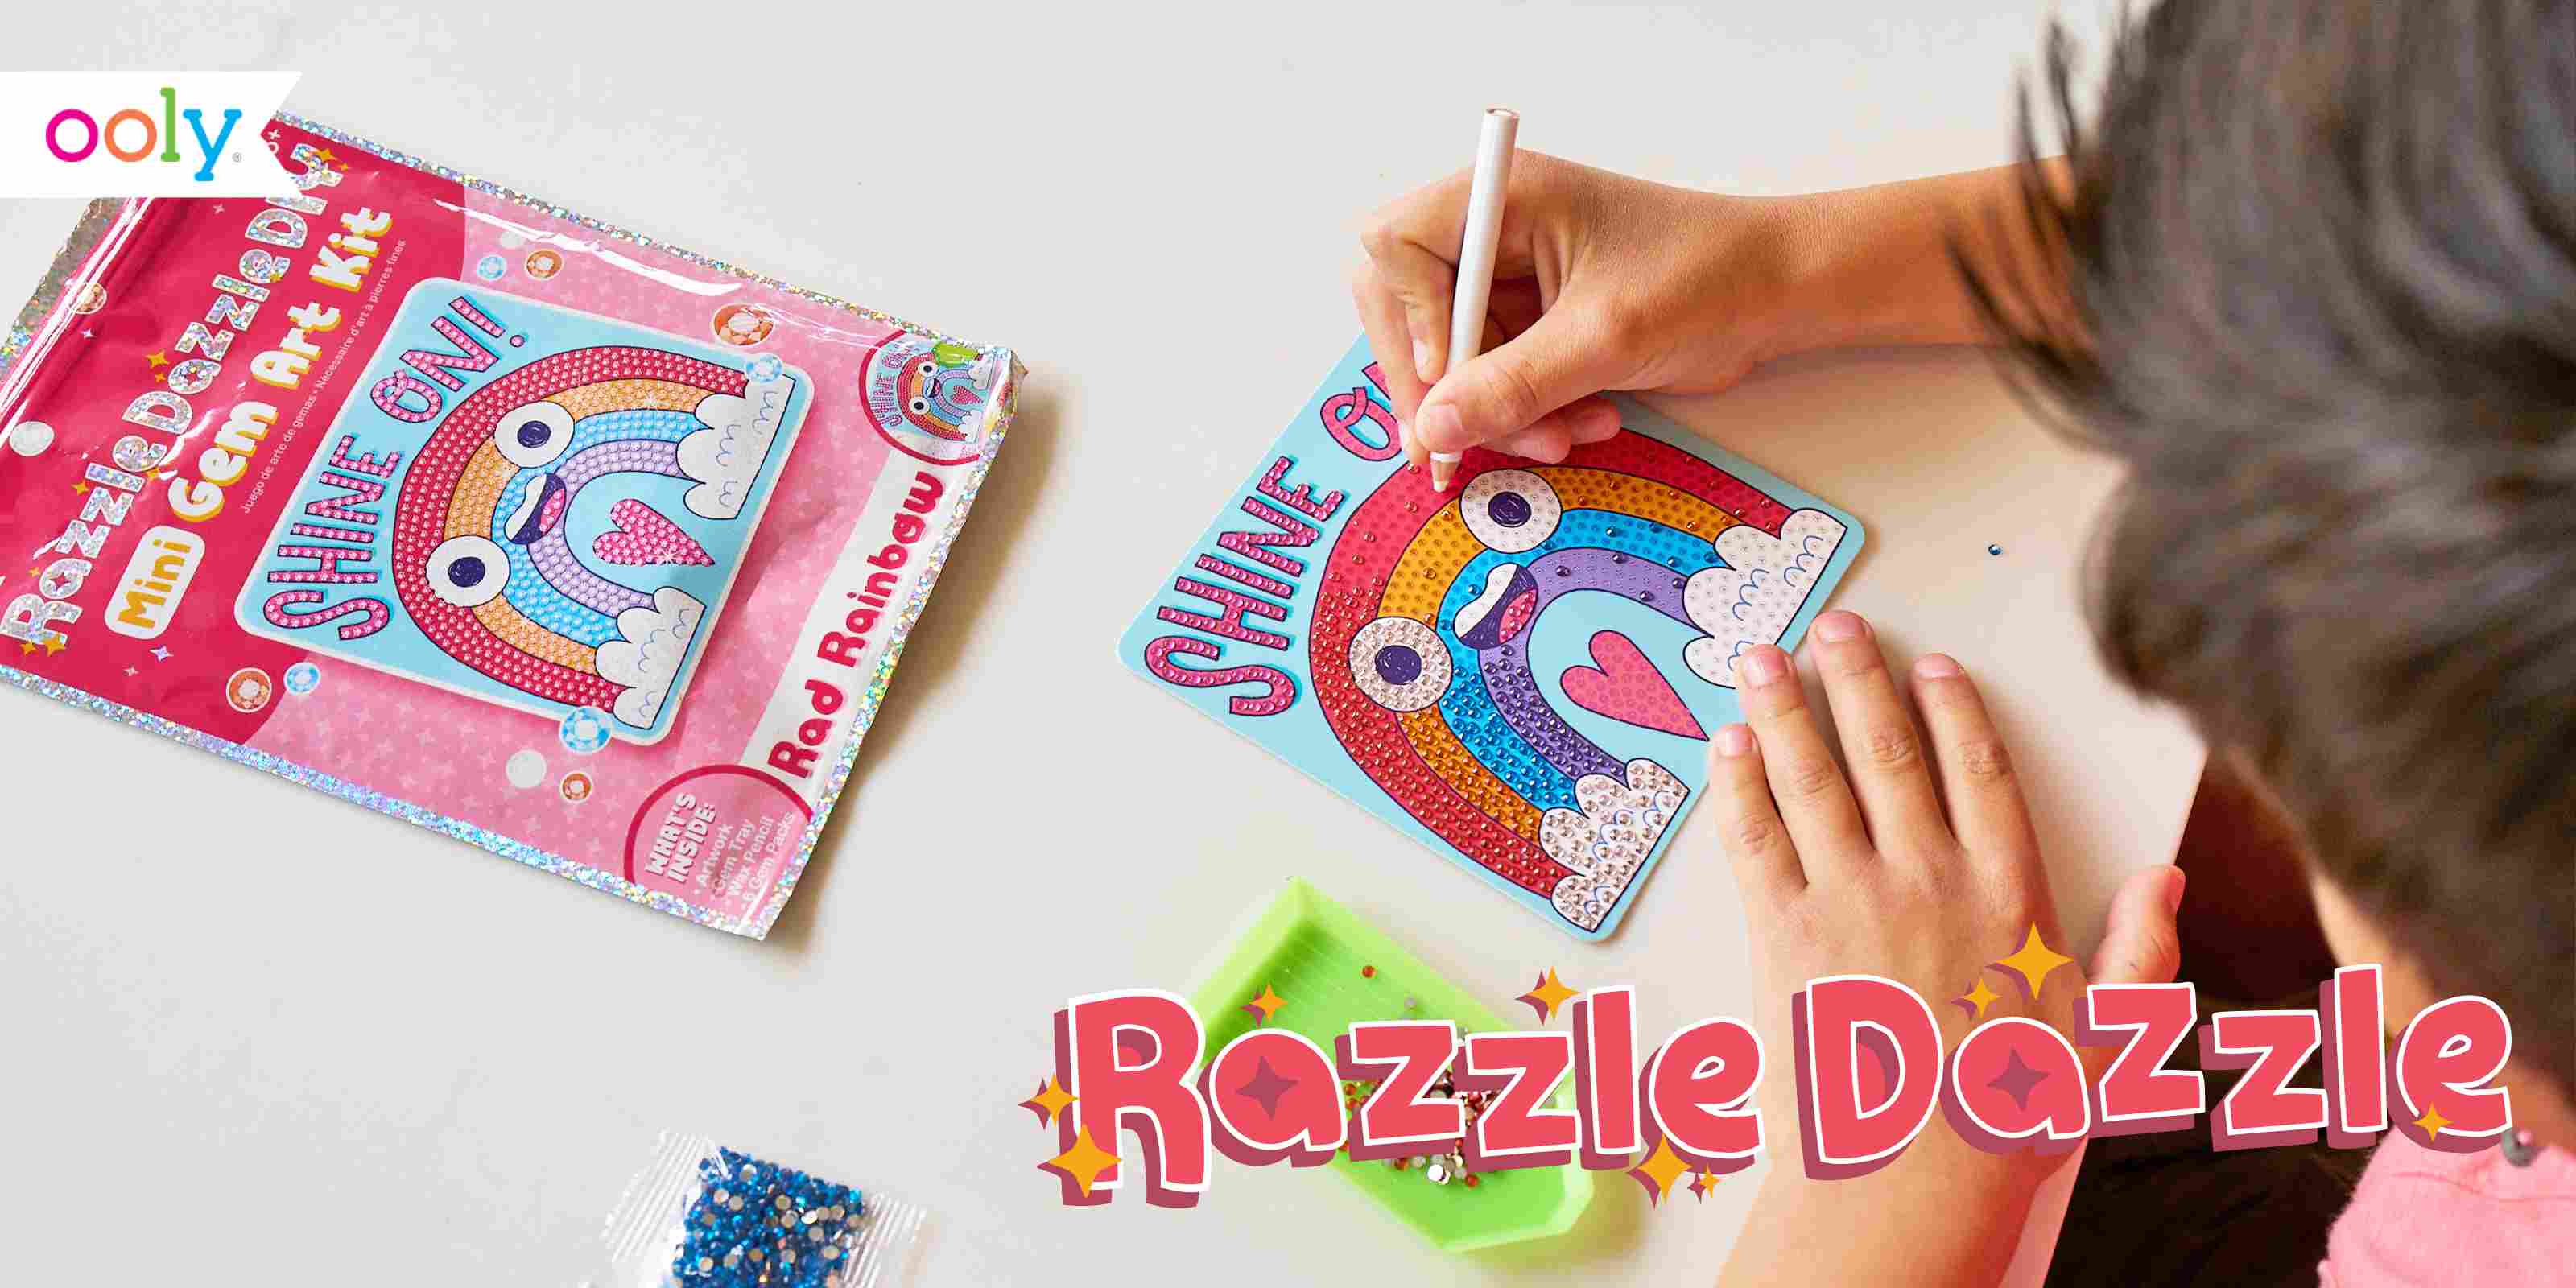 Ooly Razzle Dazzle D.I.Y. Mini Gem Art Kit - Pretty Panda – Minim Kids